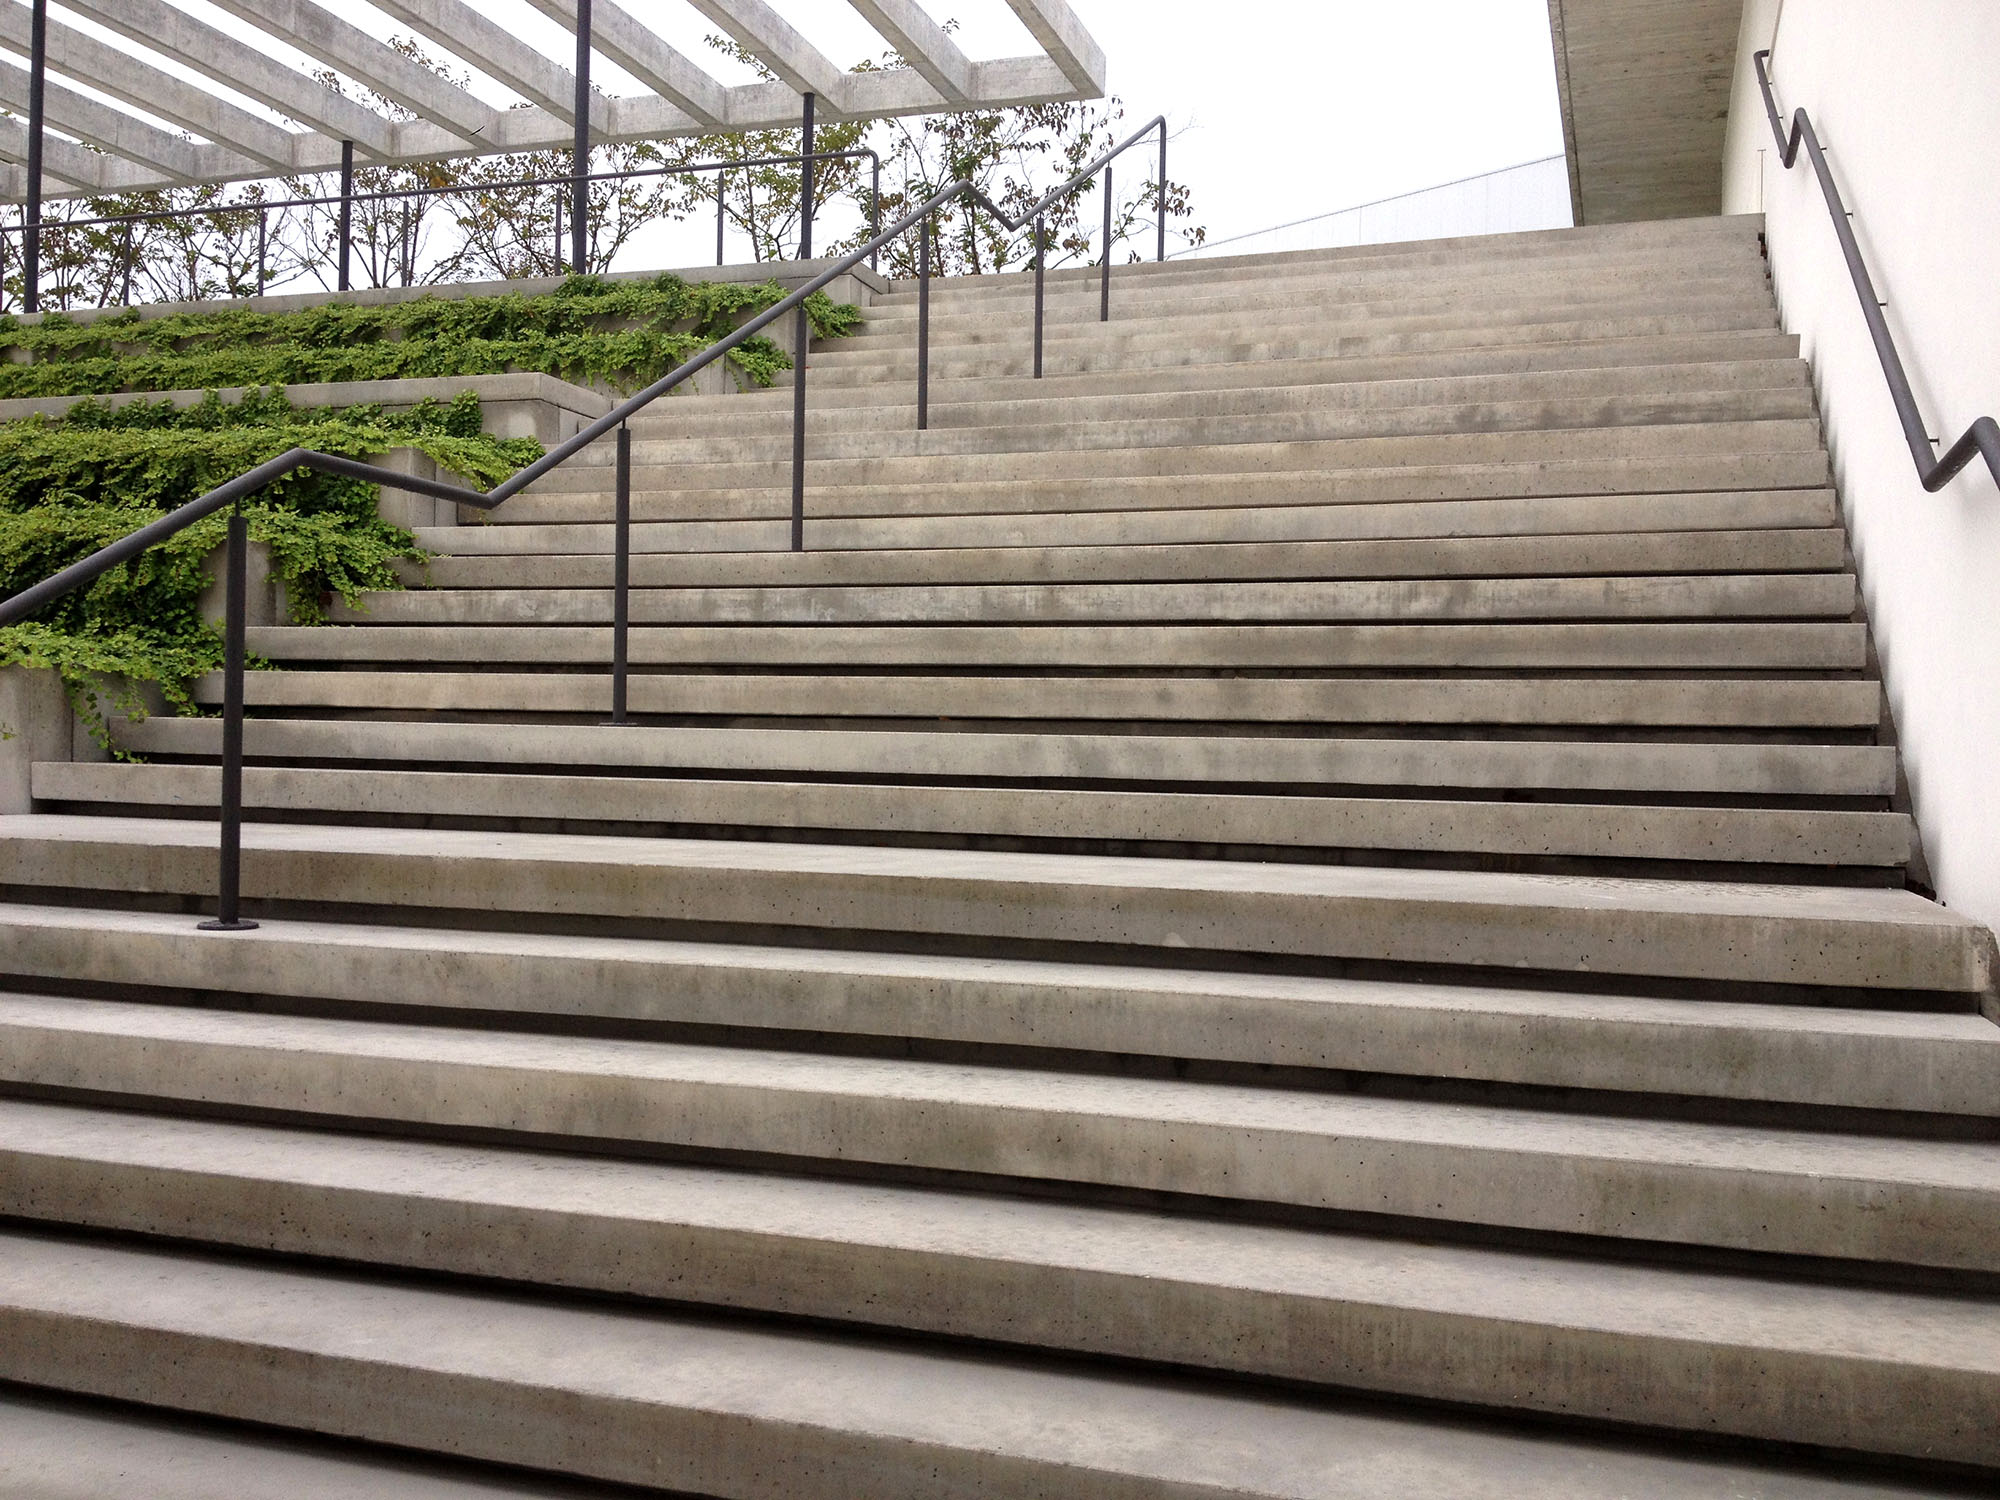 Escalinata de hormigón prefabricado arquitectónico sin anclajes vistos